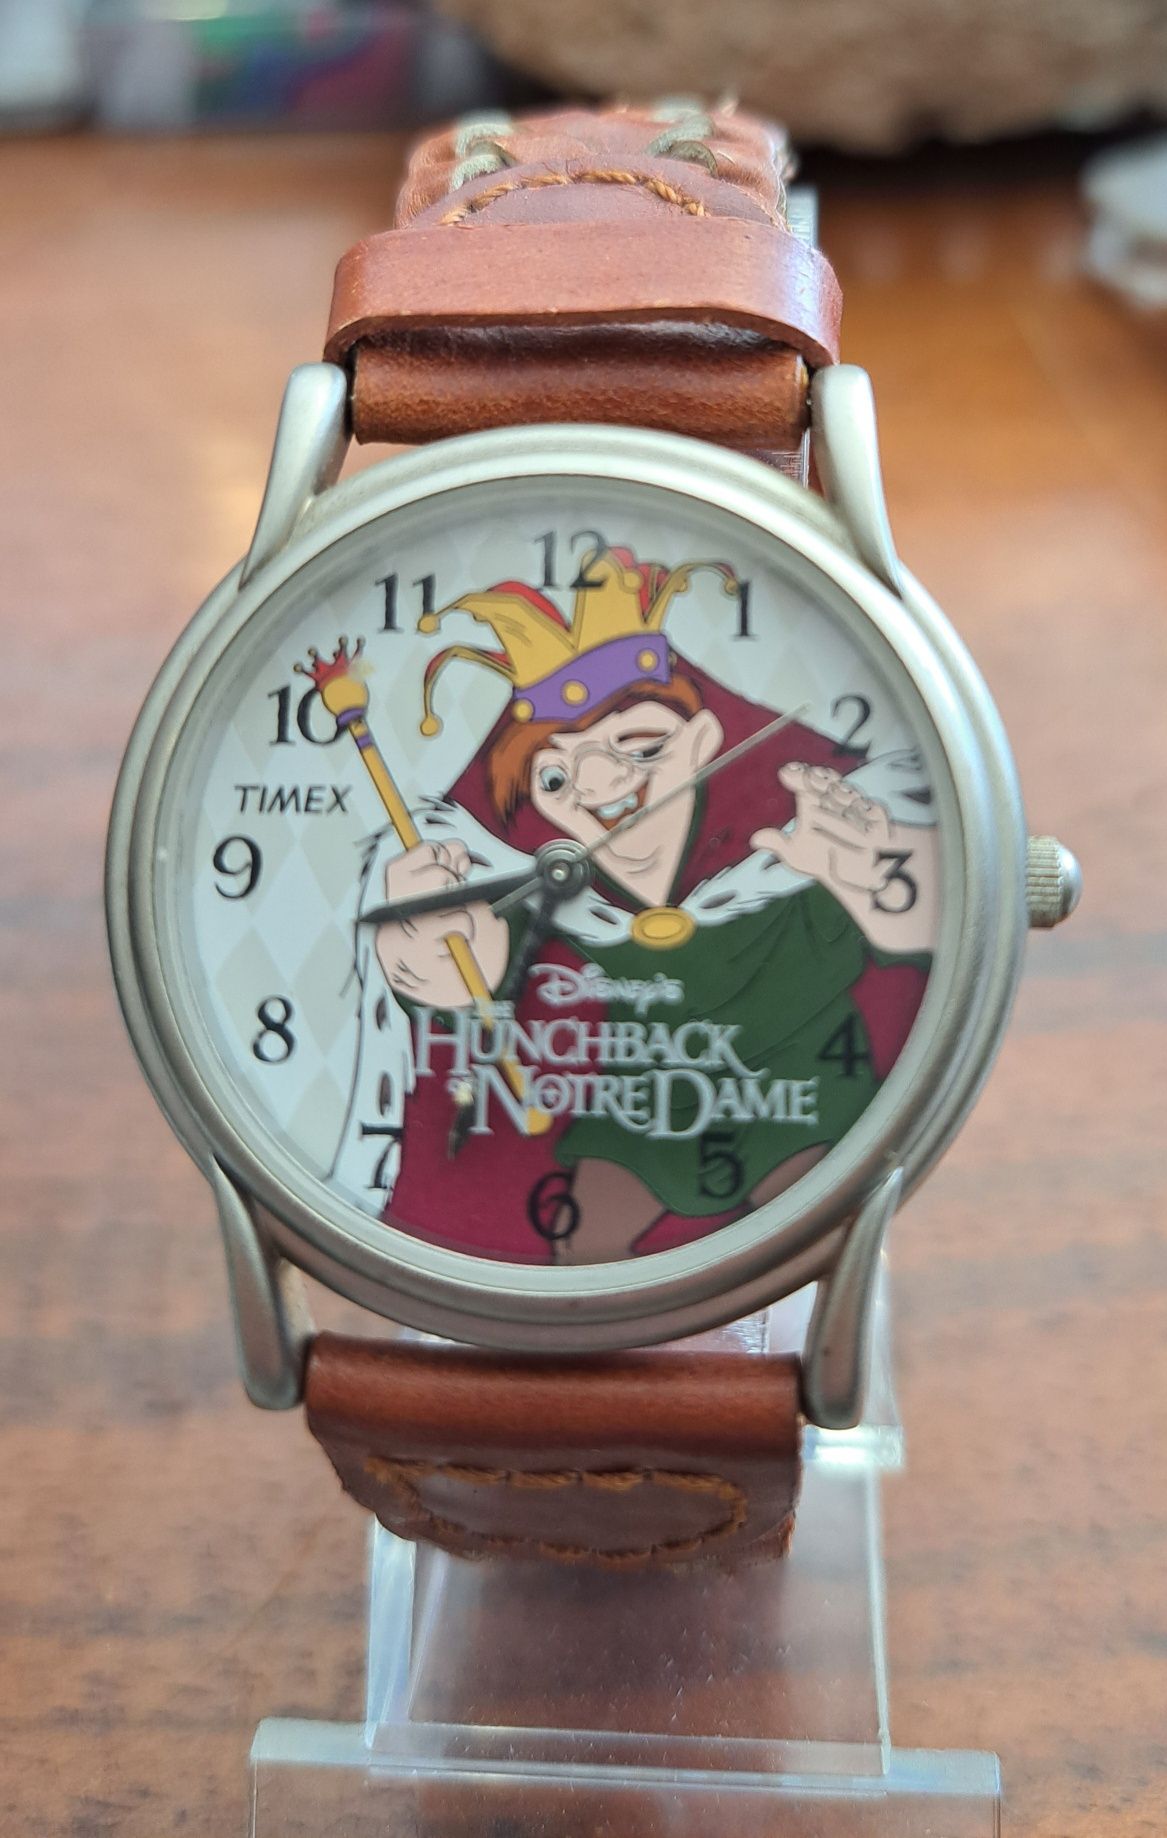 Relógio Timex novo com bracelete em pele